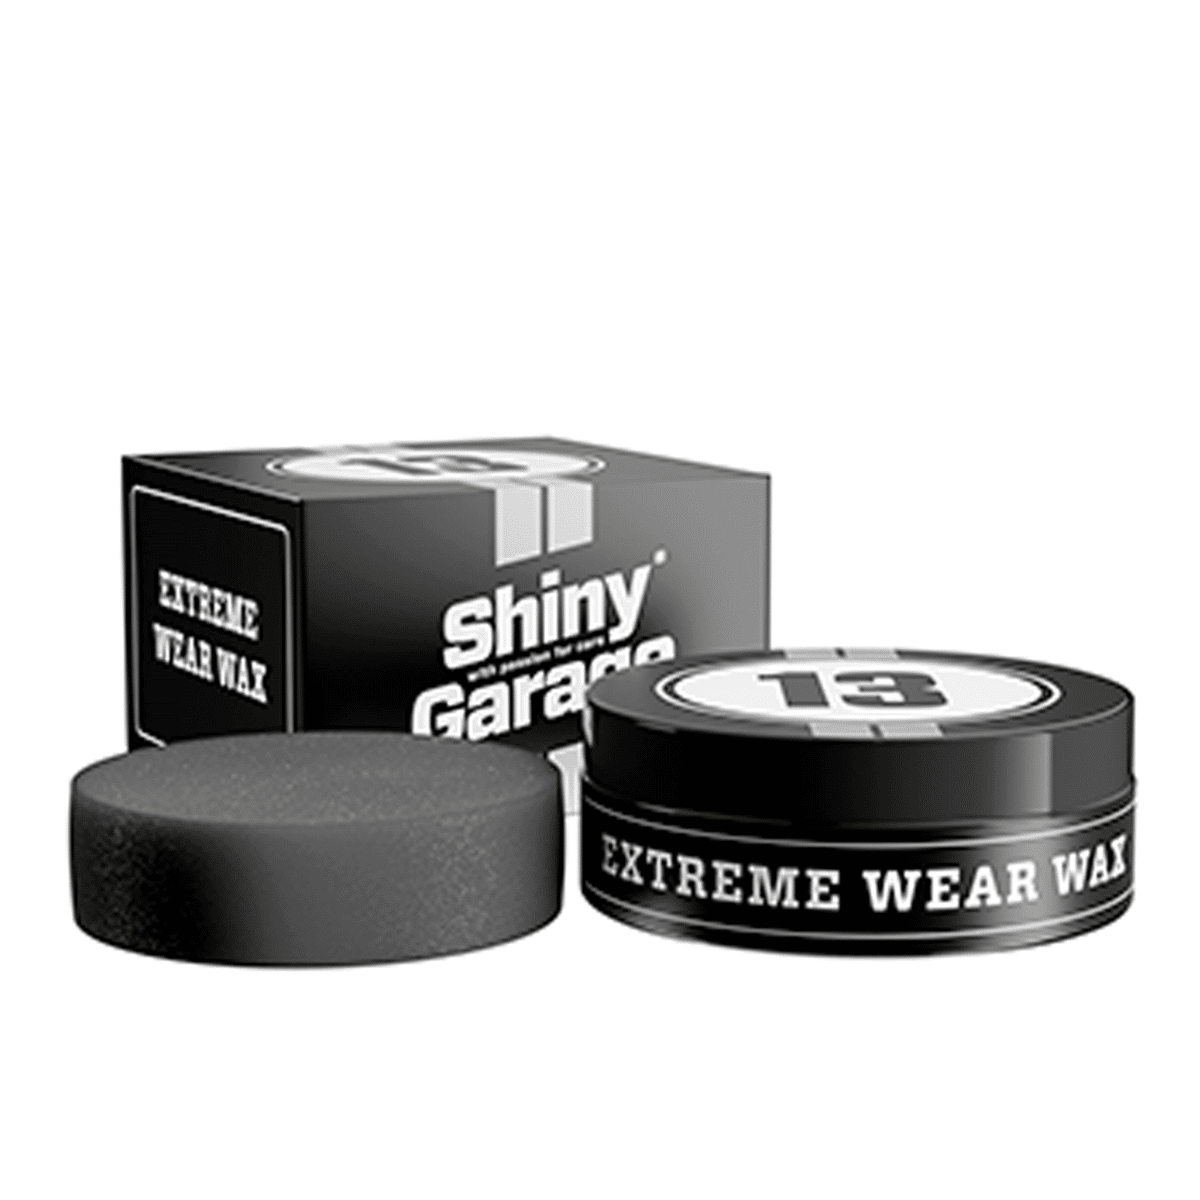 SHINY GARAGE Extreme Wear Wax 200g Wosk Syntetyczny do Lakierów Samochodowych